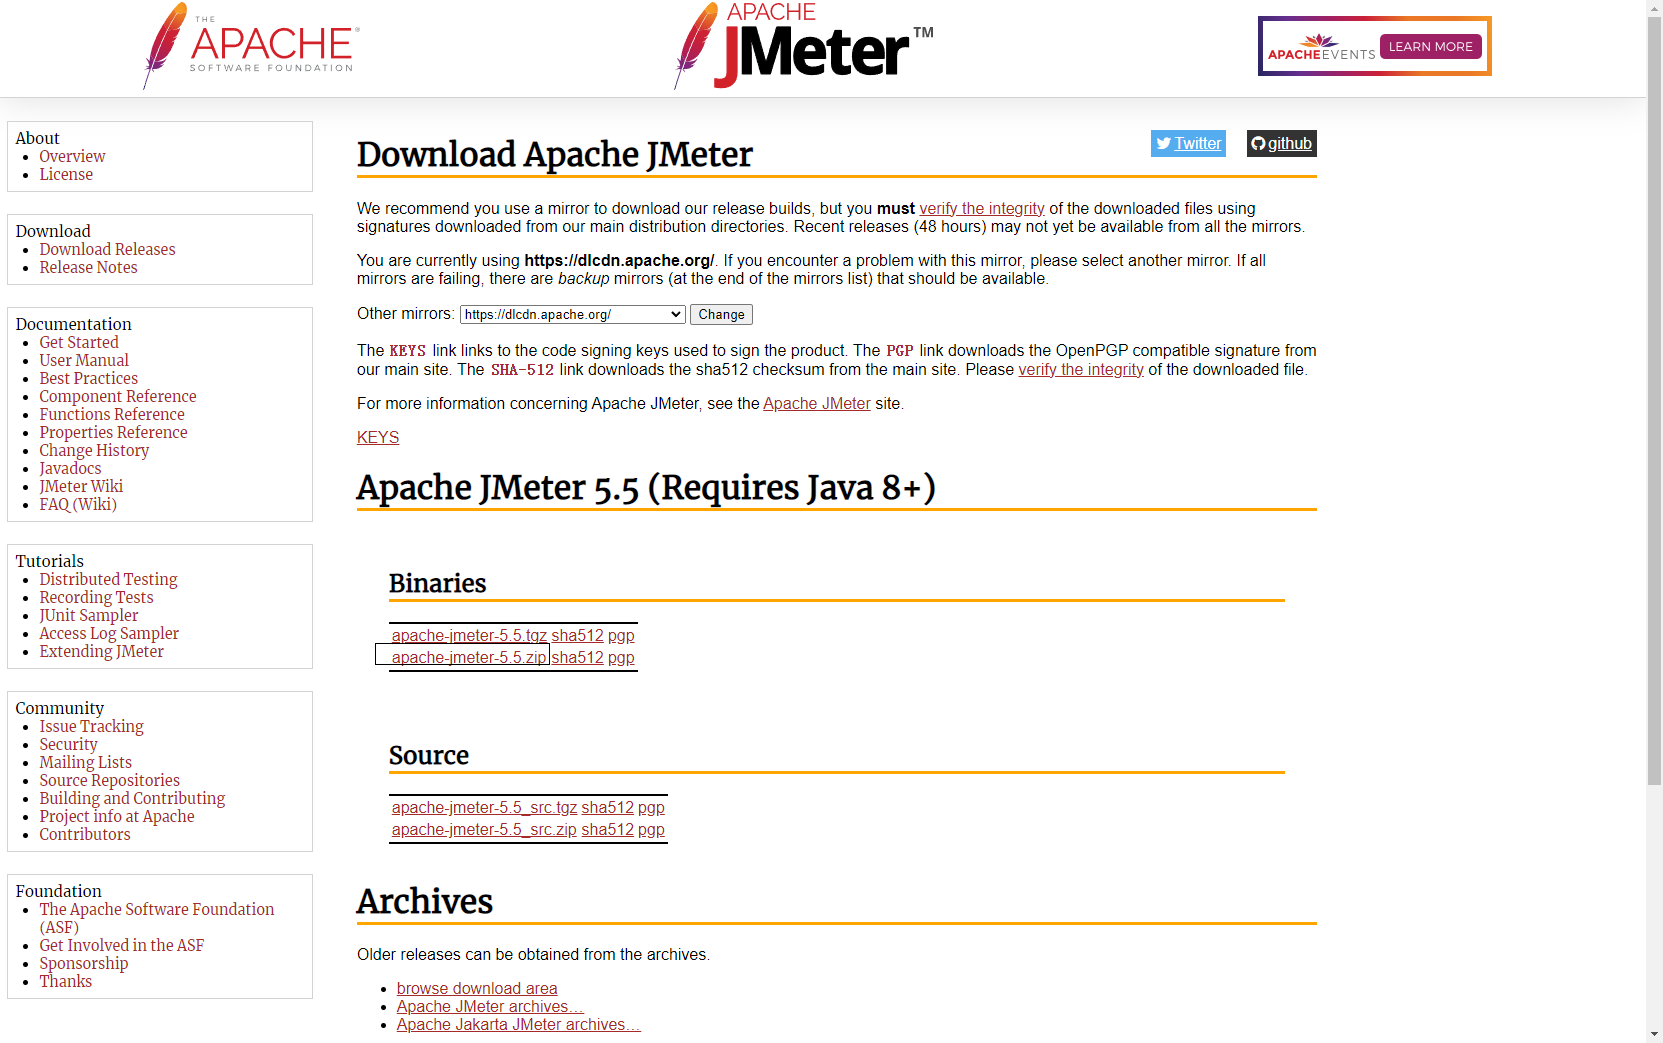 jmeter_Download_apache_jmeter_5.5_zip